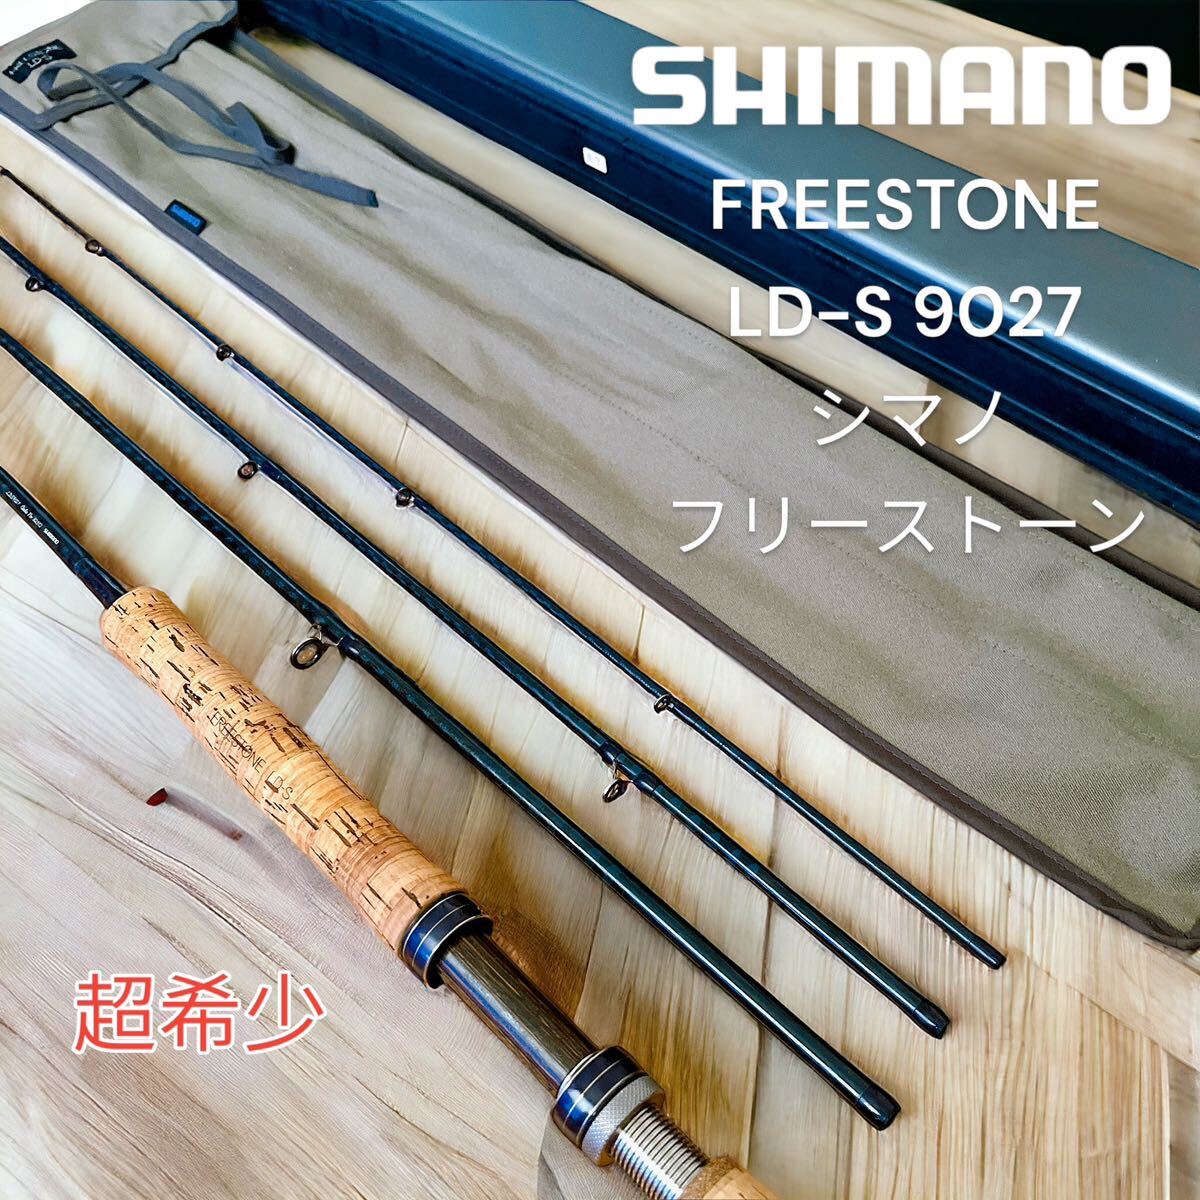 SHIMANO FREESTONE LD-S 9027 フリーストーンシマノ の画像1